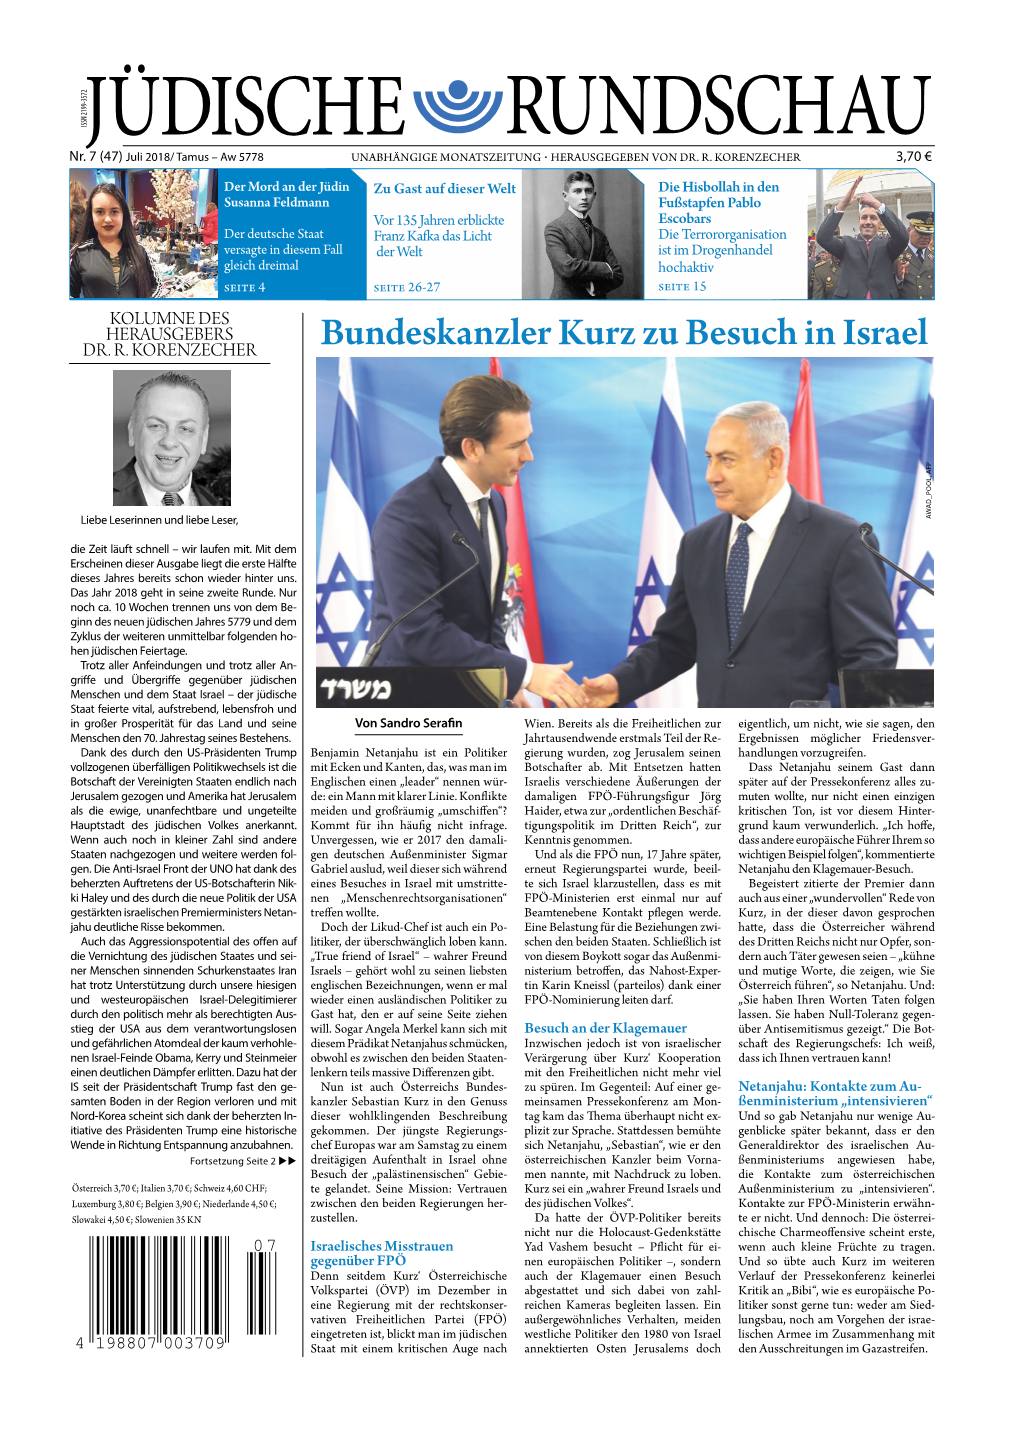 Bundeskanzler Kurz Zu Besuch in Israel